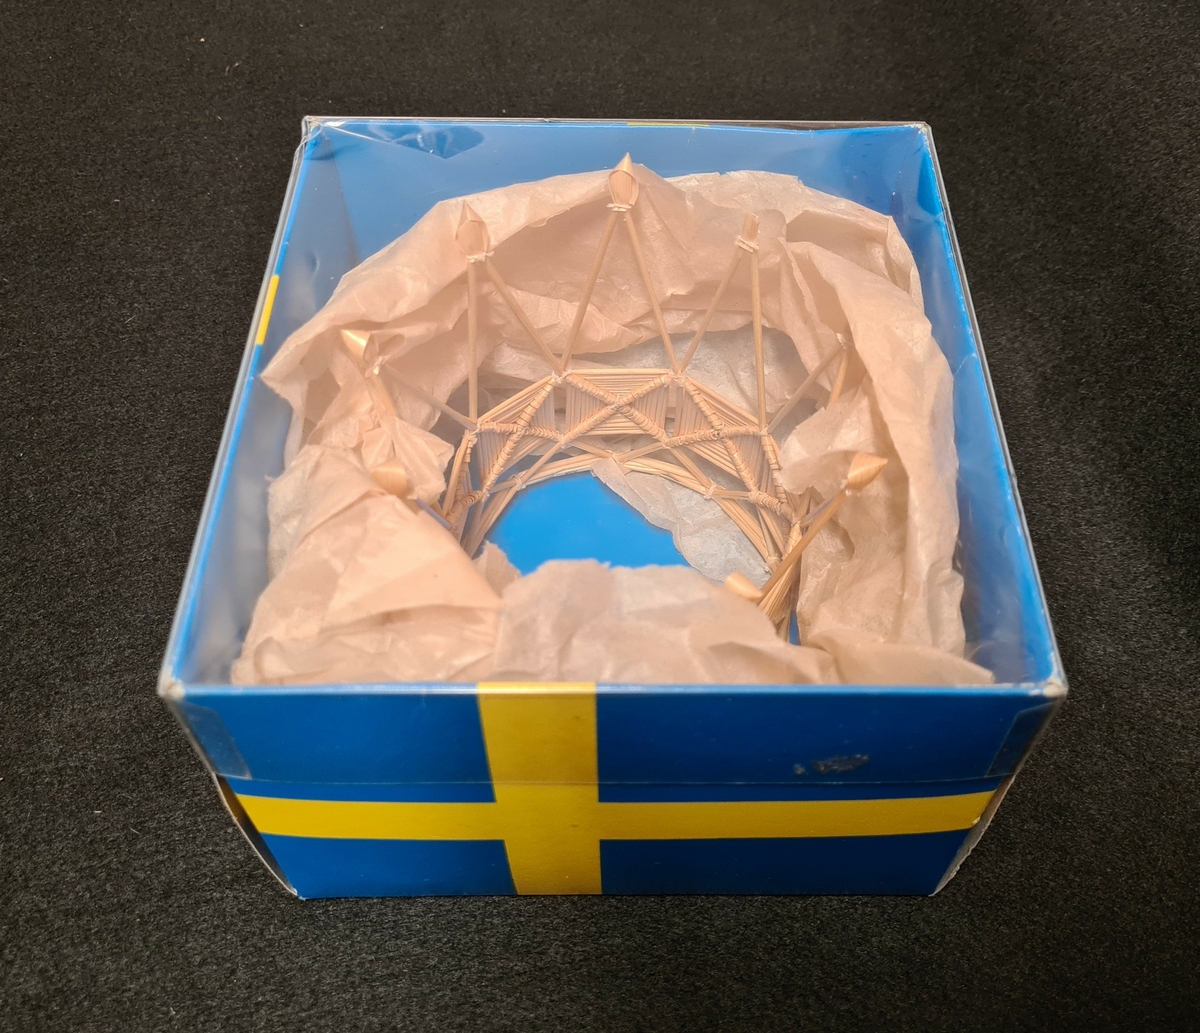 Brudkronan i halm som har 9 spiror och 9 plattor.

Tillverkad i augusti 1983 av Irma Bryntesson.
Kronan ligger i en förpackning med svenska flaggan som tryck.

Ingår i halmdokumentationen 1983.